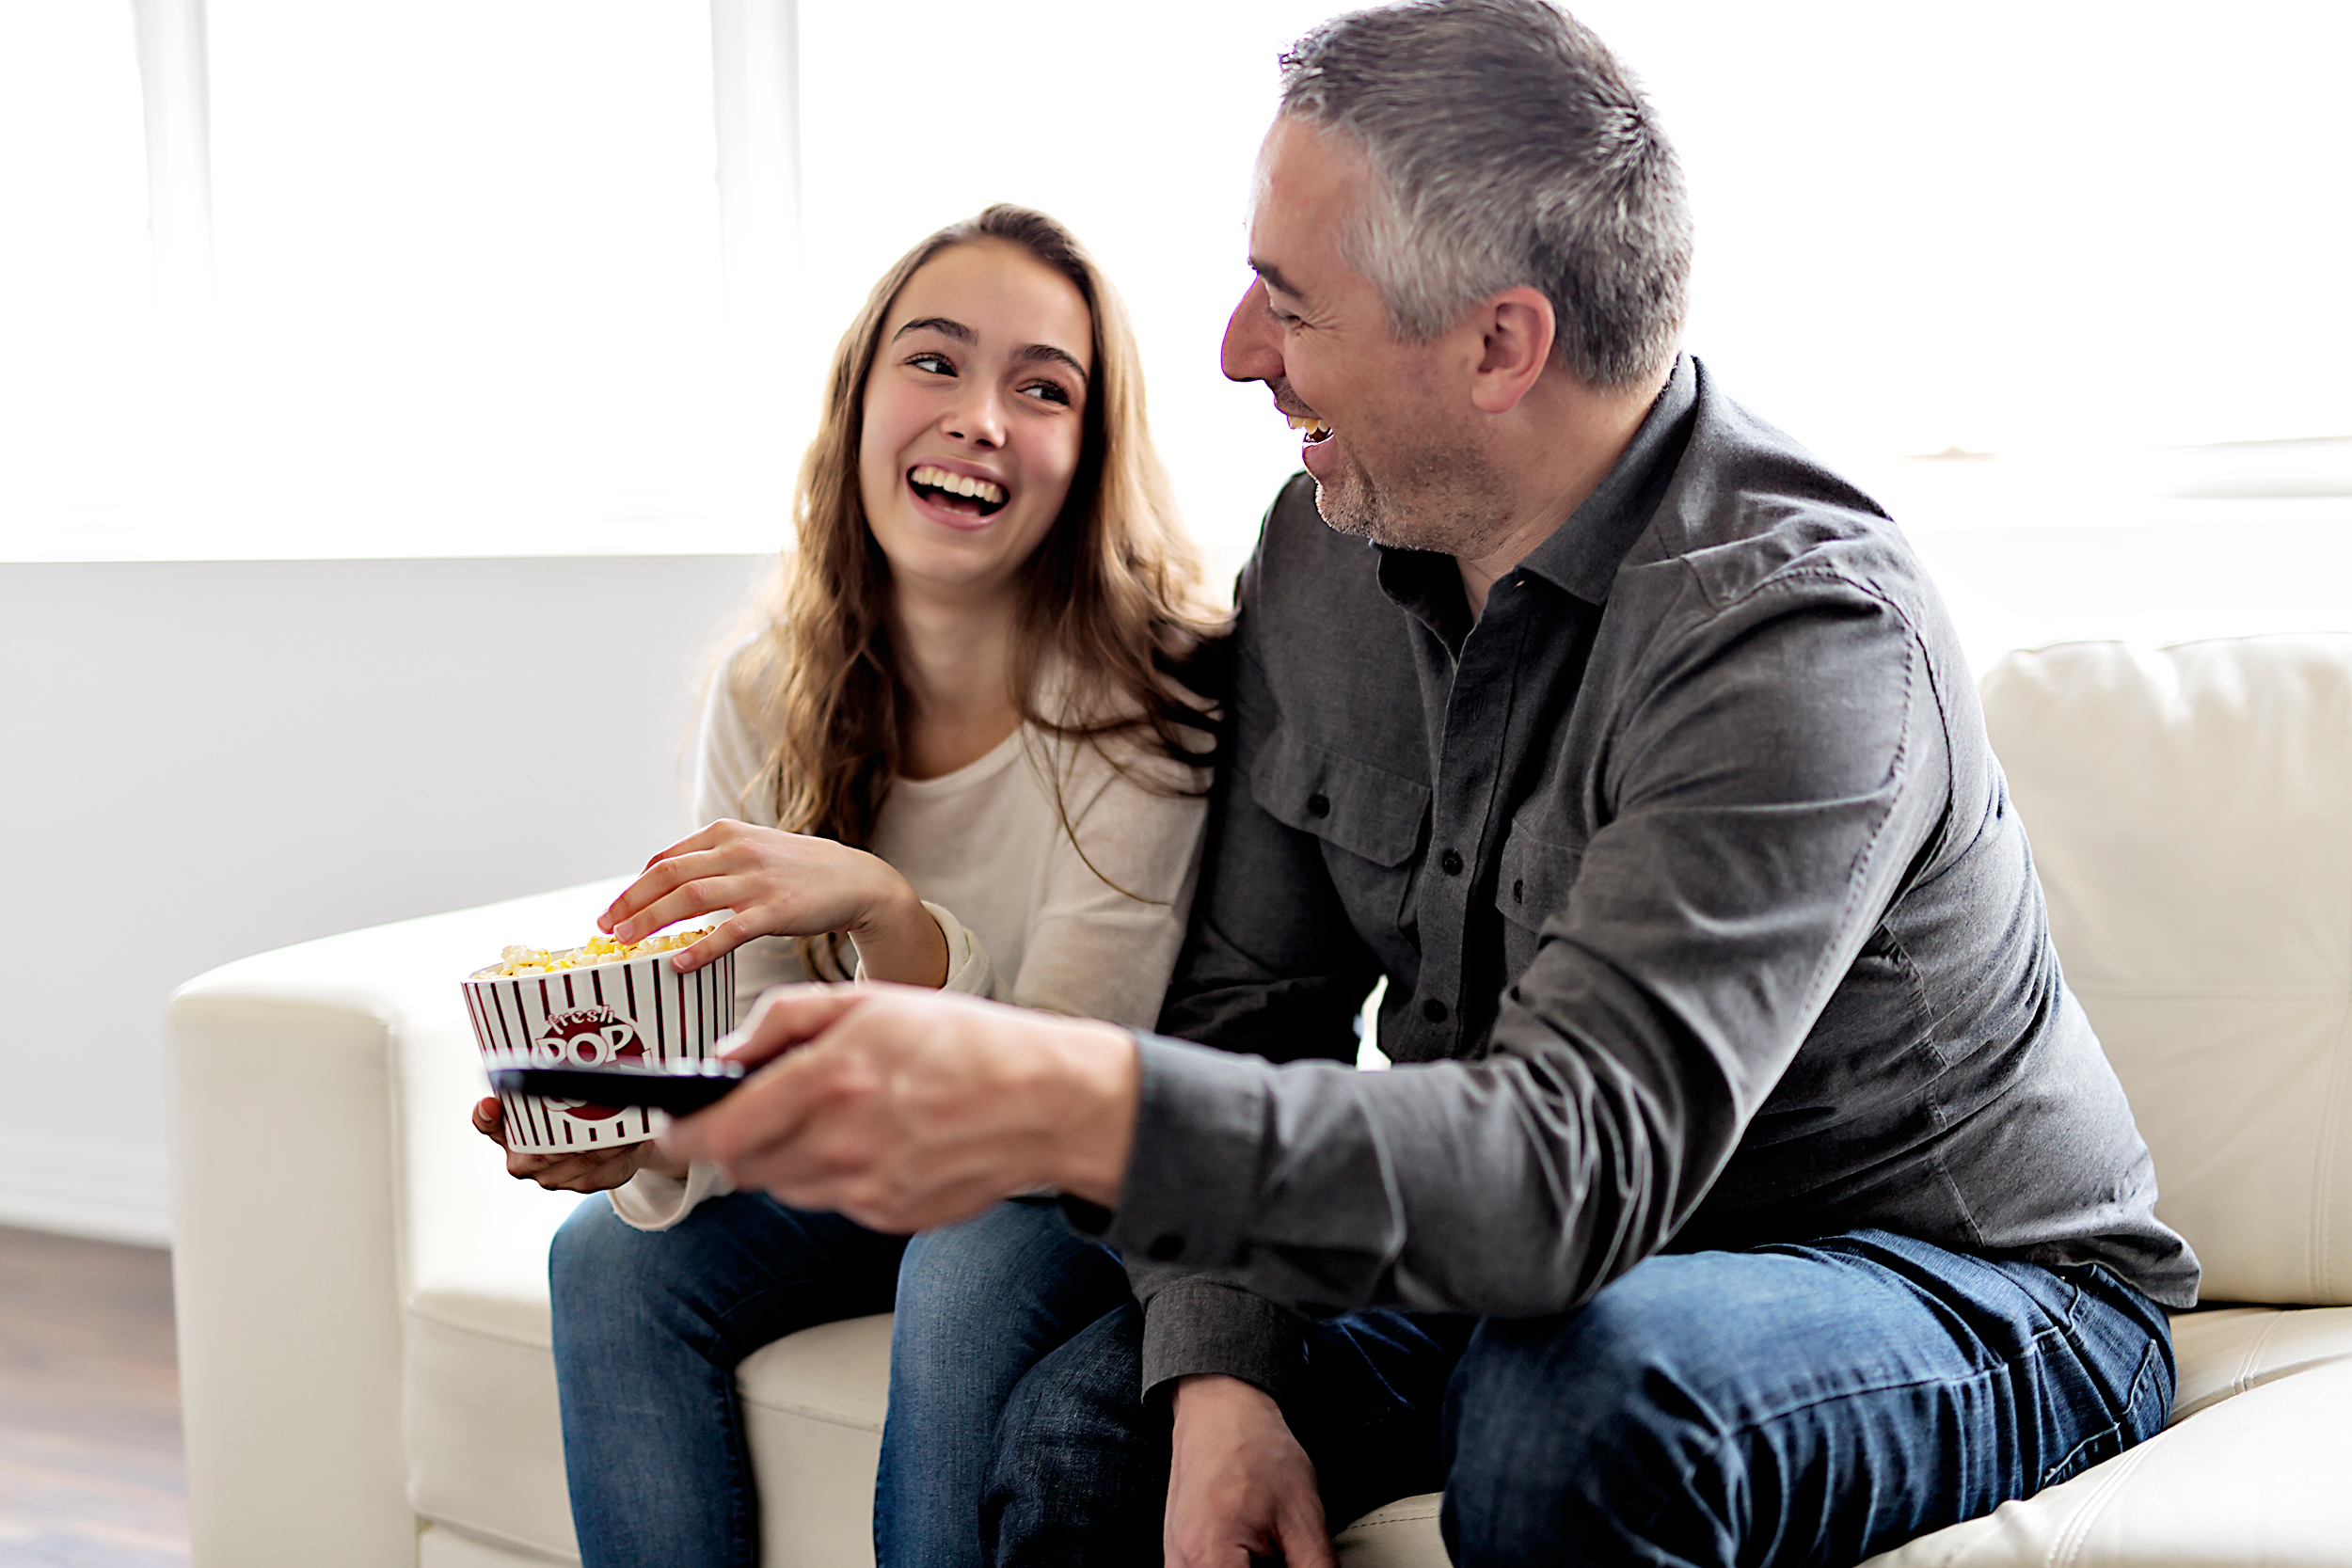 Un duo papa-fille est photographié en train de rire ensemble en regardant la télévision et en mangeant du pop-corn | Source : Shutterstock